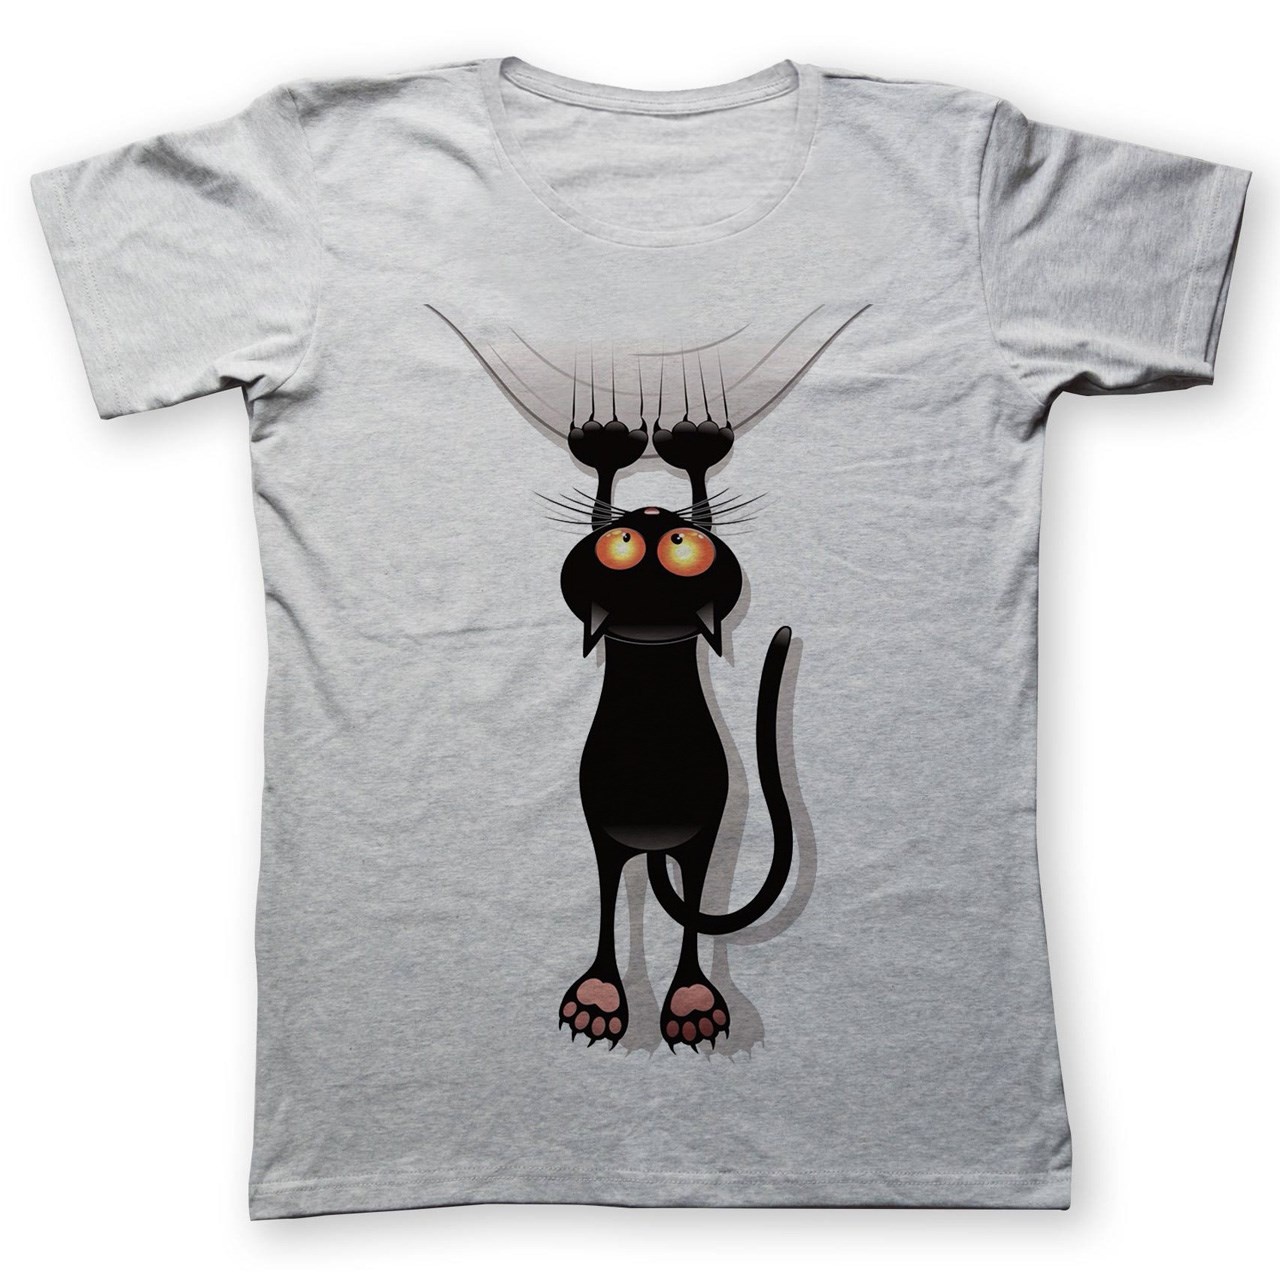 تی شرت به رسم طرح گربه کد 256